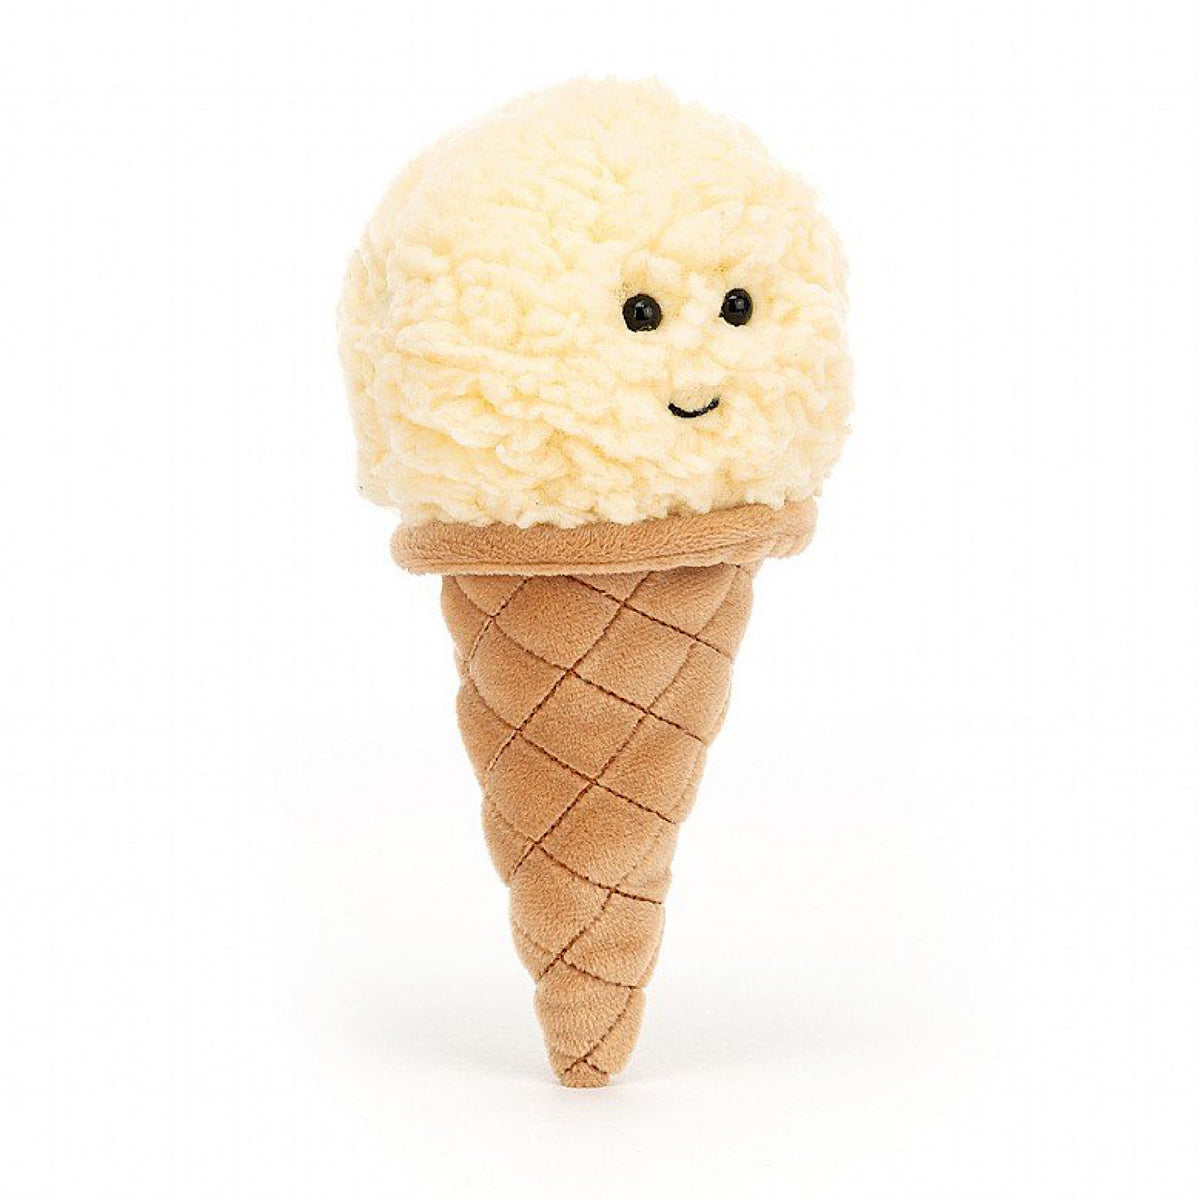 Irresistible Ice Cream, Vanilla